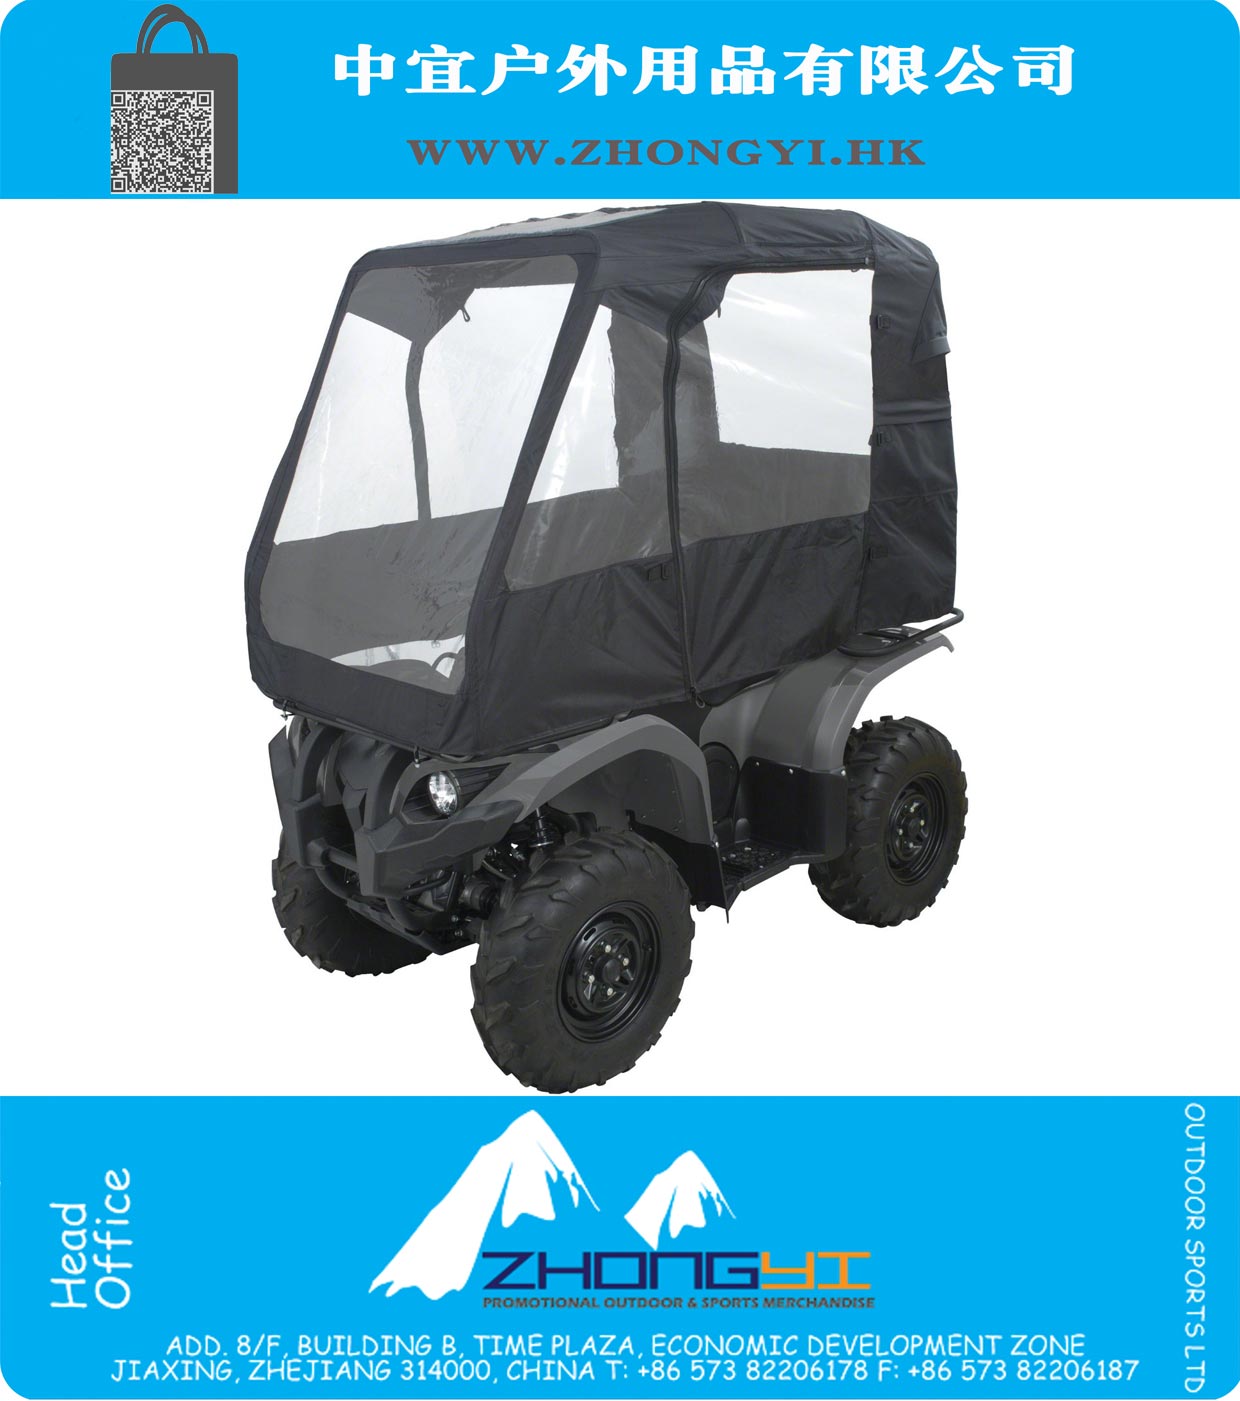 Accesorios Classic Negro Deluxe ATV cabina, se ajusta a vehículos todo terreno con bastidores